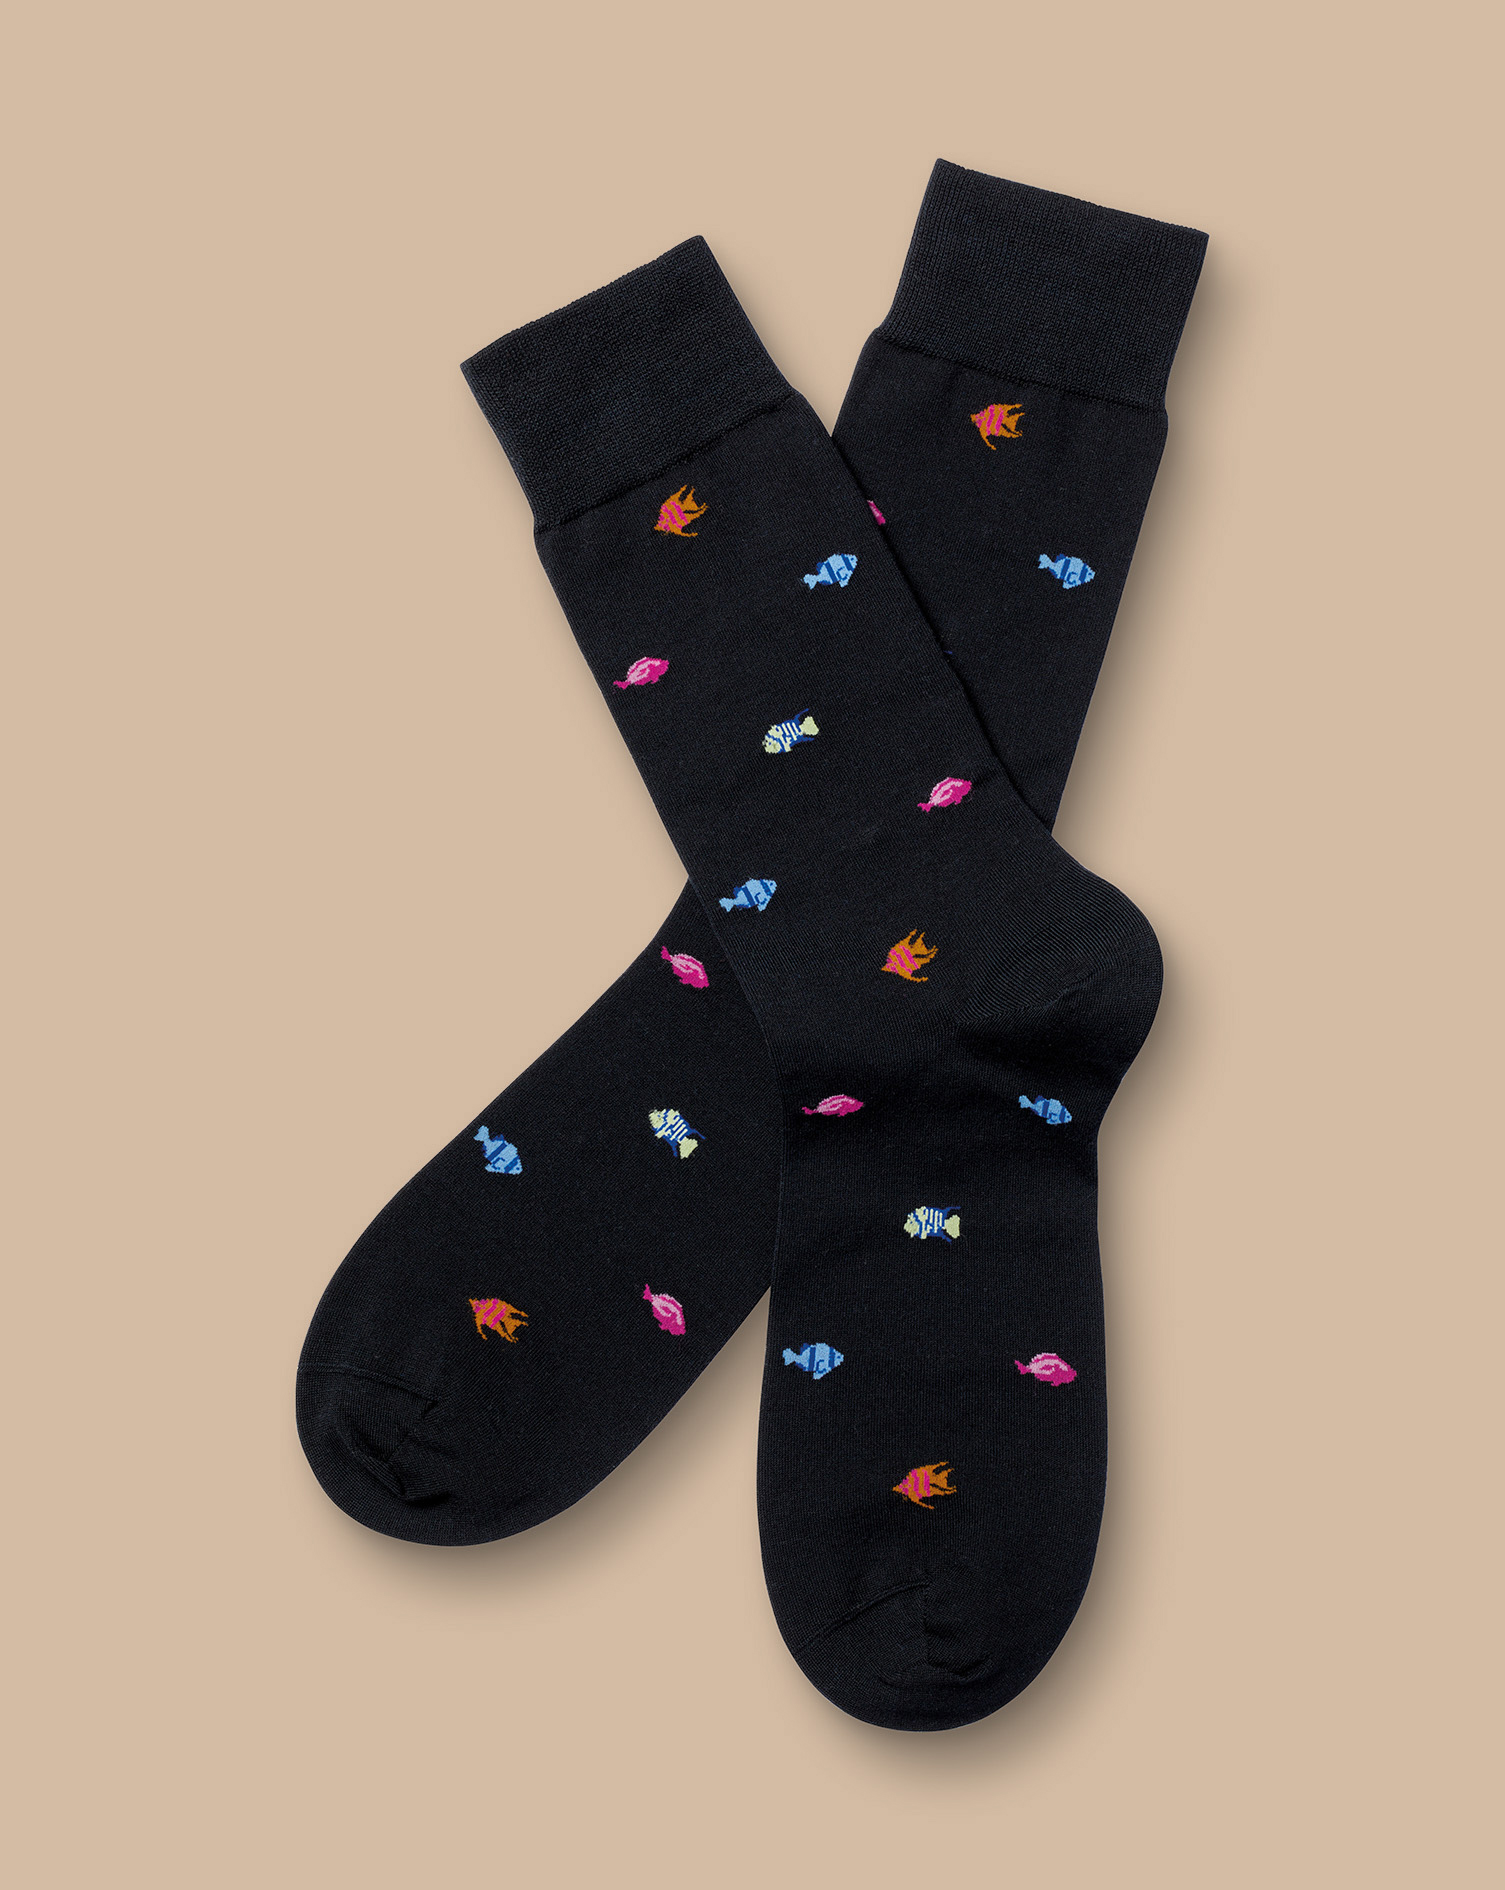 Men's Charles Tyrwhitt Tropical Fish Socks - Black Size 10.5-13 Cotton
